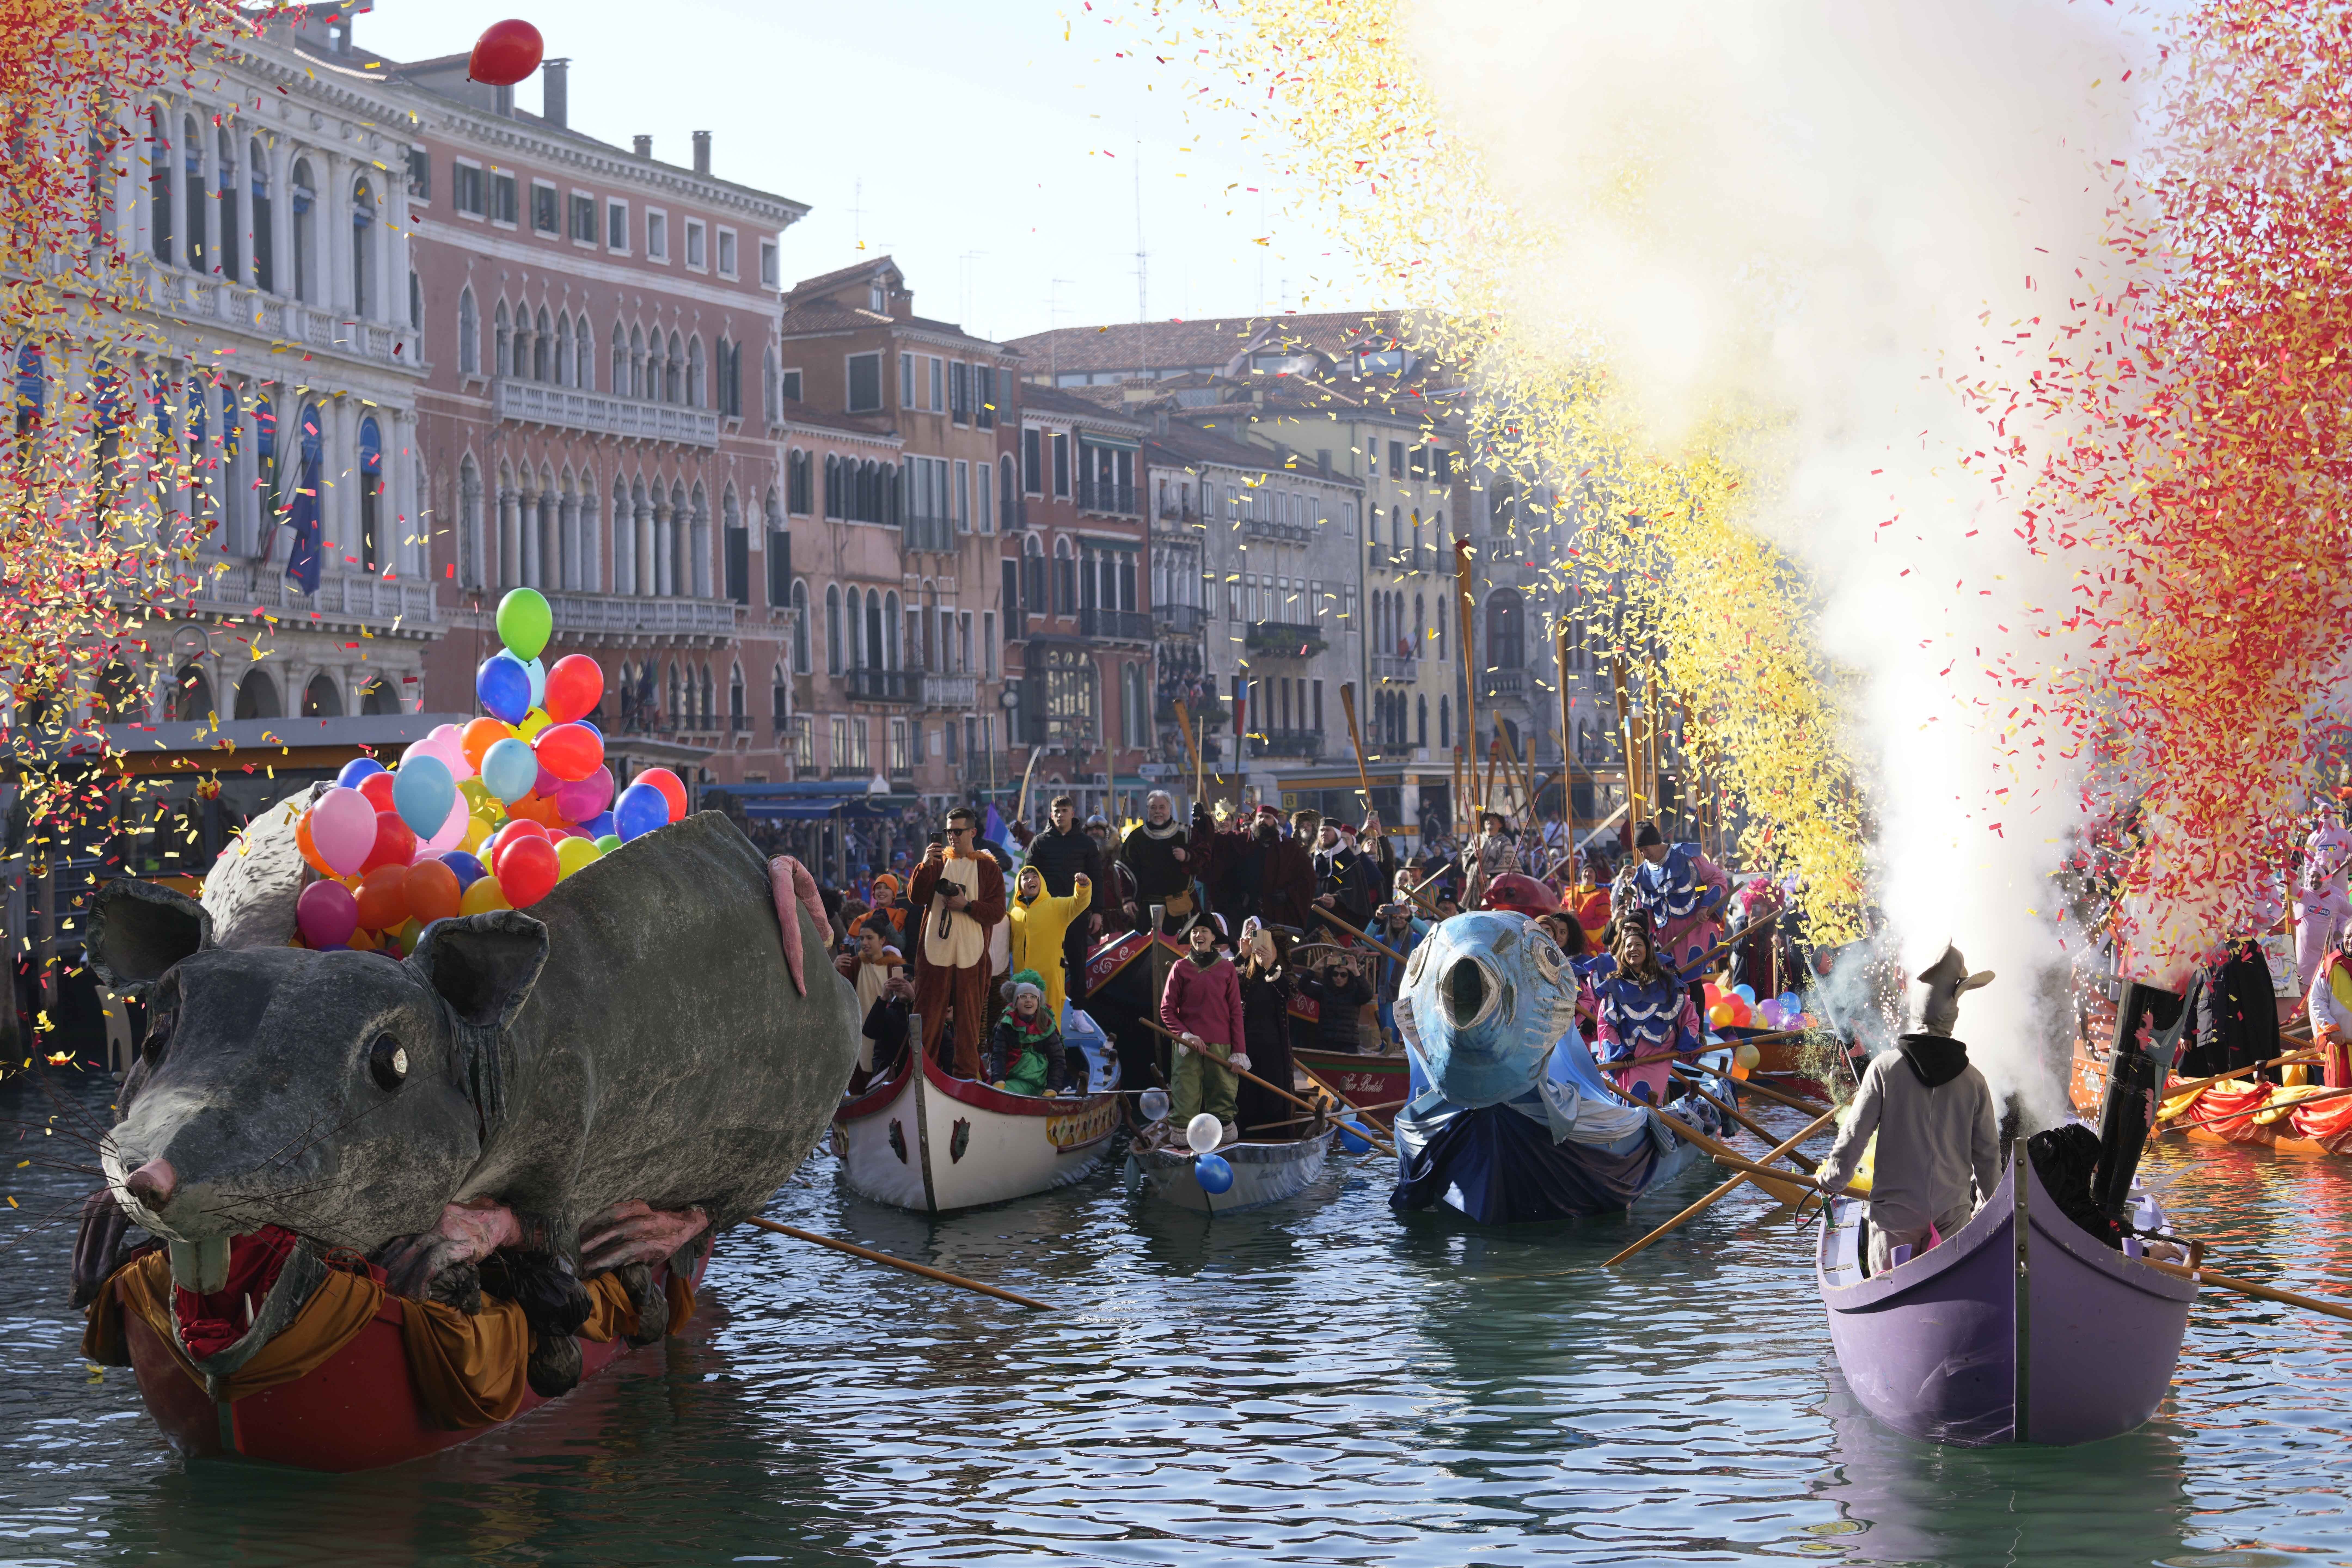 Καρναβάλι Βενετίας: Βεγγέρα μασκαράδων στο μεγάλο κανάλι (φωτογραφίες)